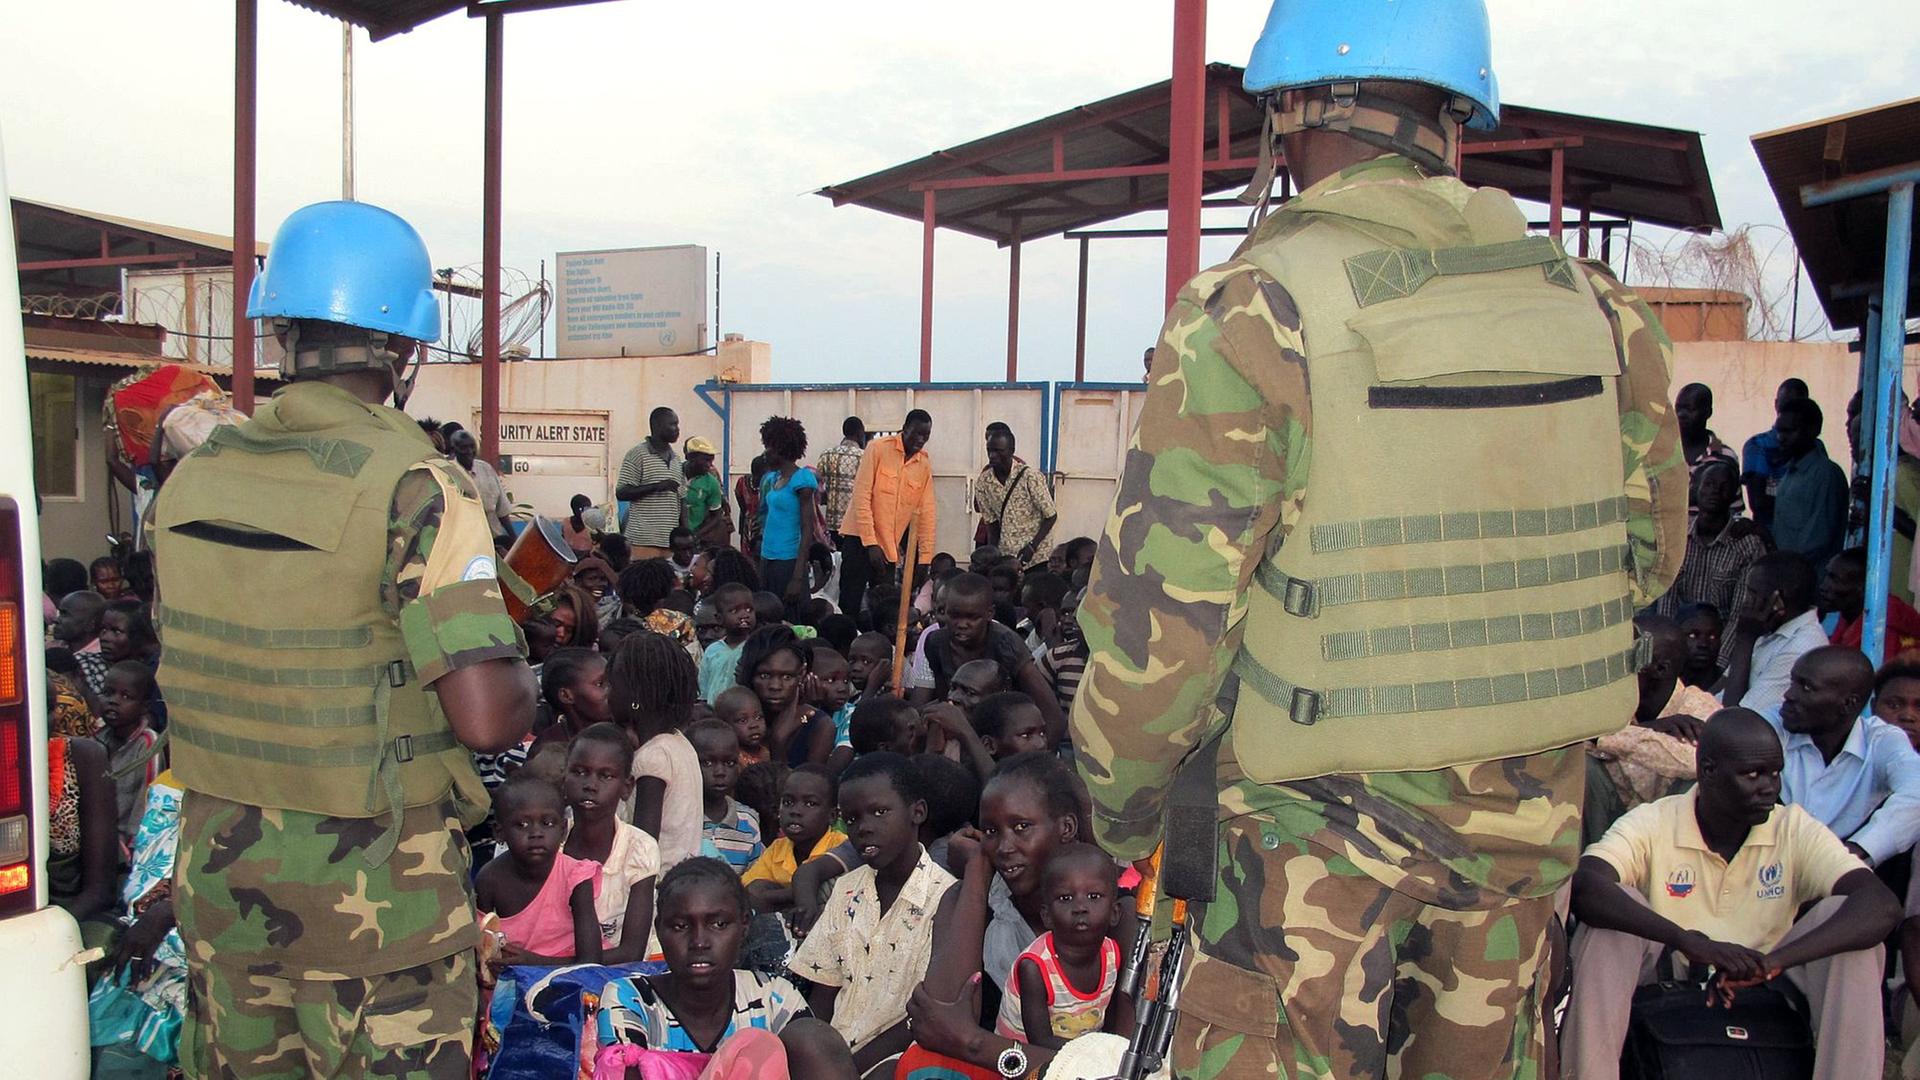 In einem UNO-Quartier in der südsudanesischen Hauptstadt Juba sitzen viele Flüchtlinge auf dem Boden, vor ihnen stehen zwei Blauhelmsoldaten der UNO.